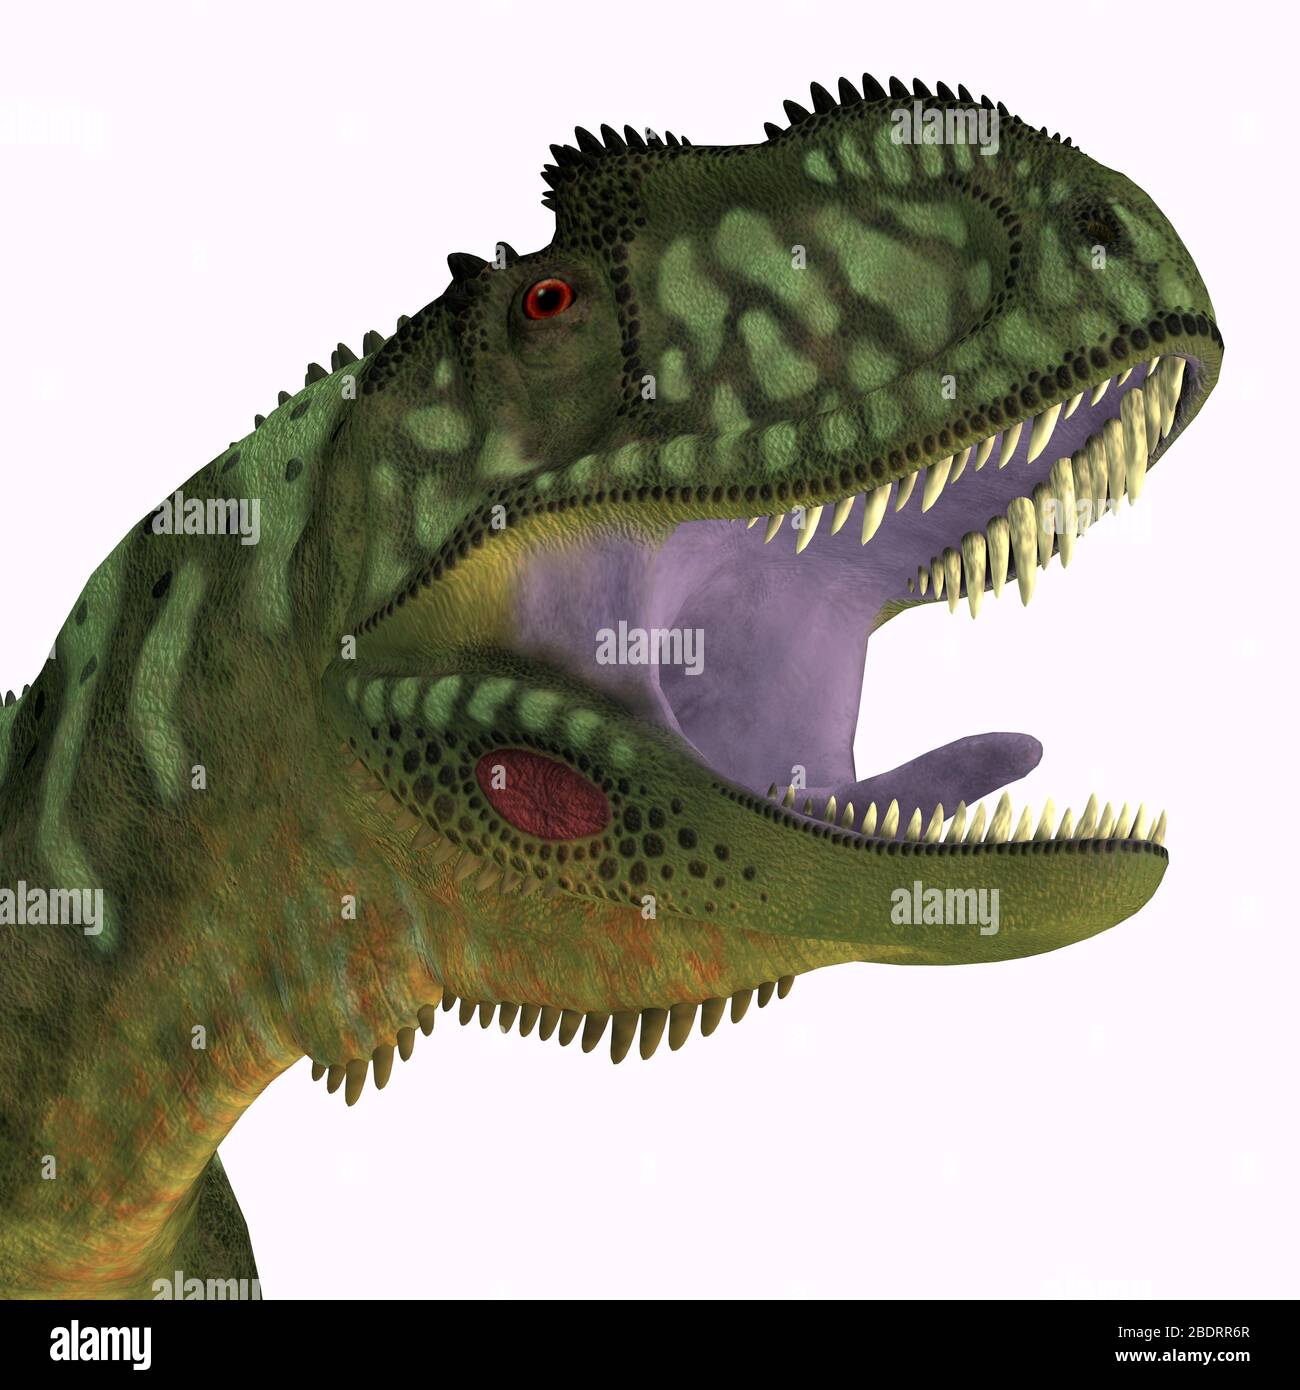 Yangchuanosaurus fue un dinosaurio terópodo carnívoro que vivió en China durante el período Jurásico. Foto de stock